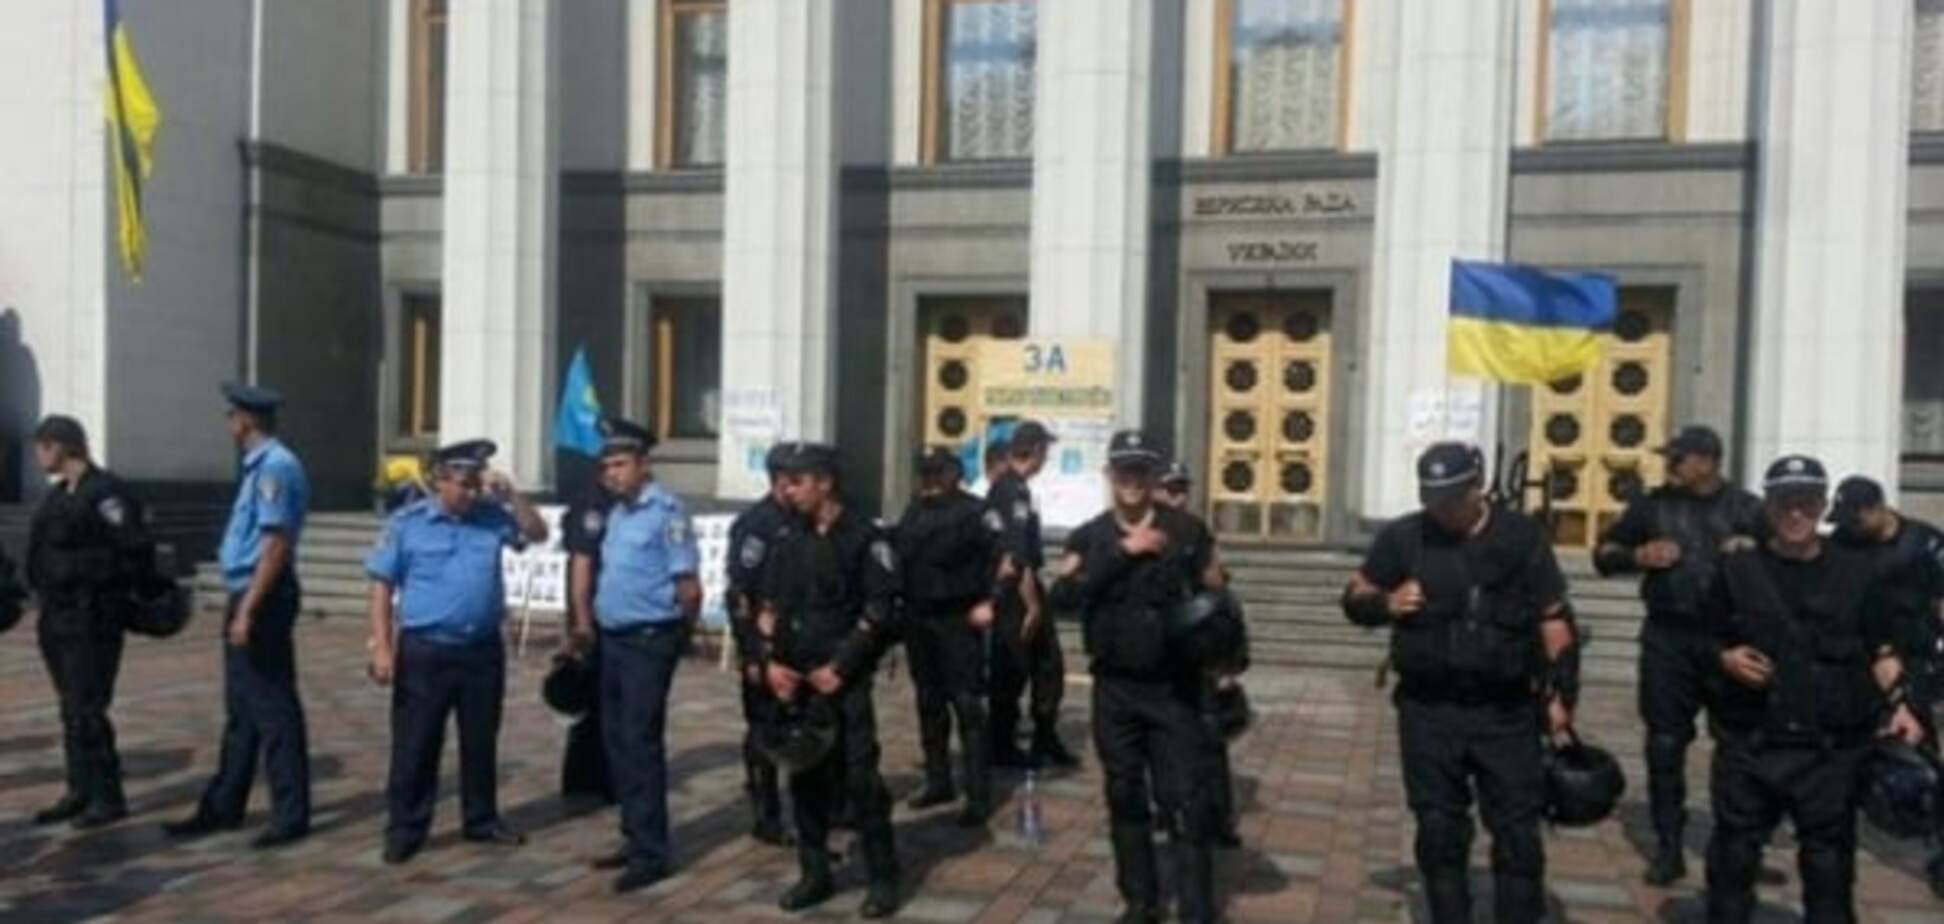 Под Радой проведут митинг и заставят депутатов проголосовать антикоррупционные законы